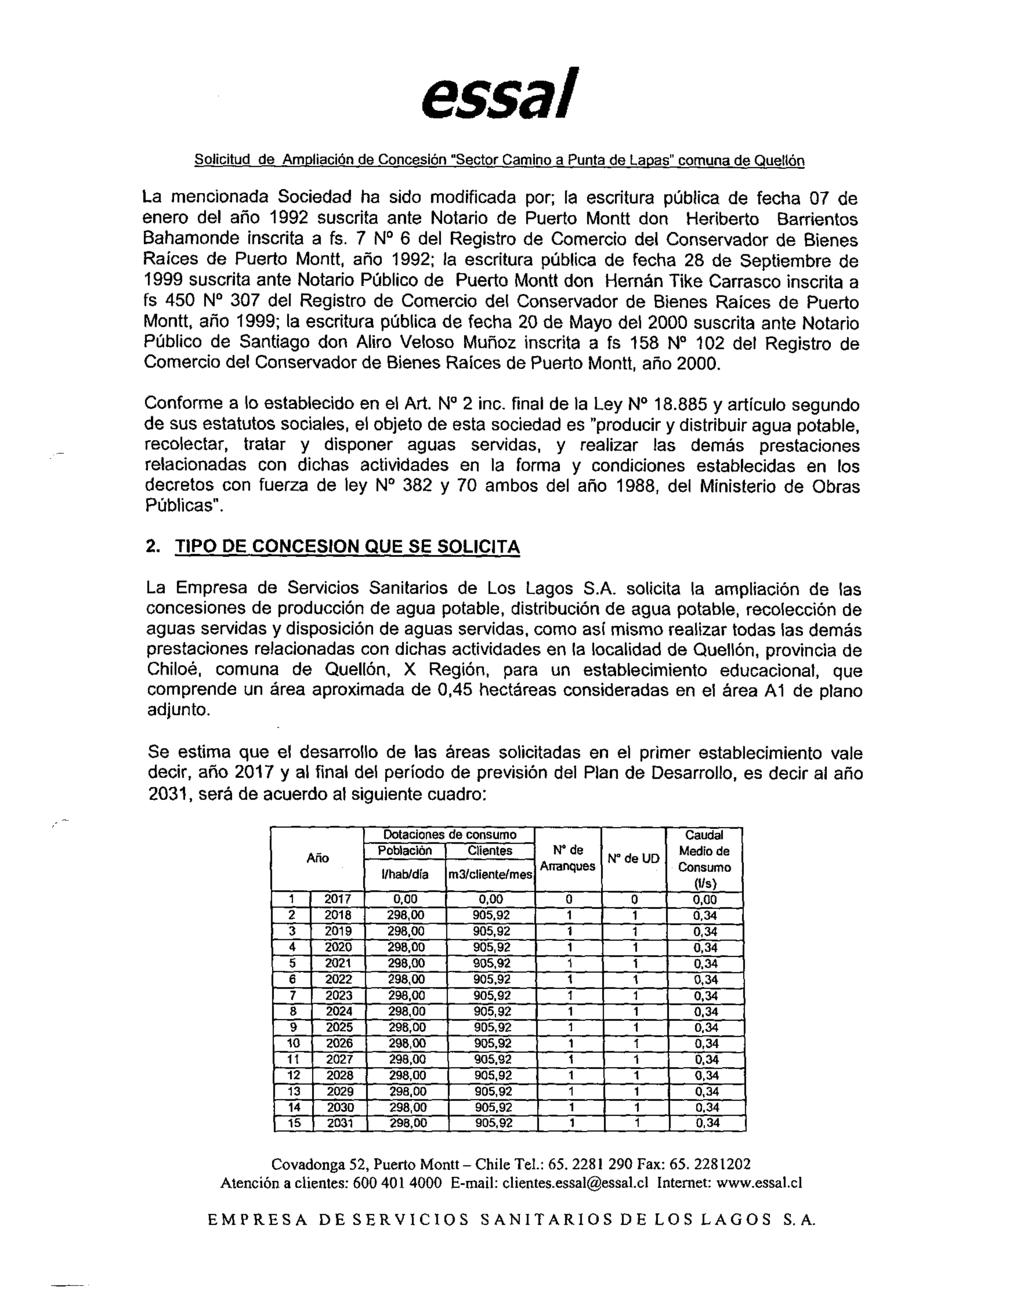 La mencionada Sociedad ha sido modificada por; la escritura pública de fecha 07 de enero del año 1992 suscrita ante Notario de Puerto Montt don Heriberto Barrientos Bahamonde inscrita a fs.